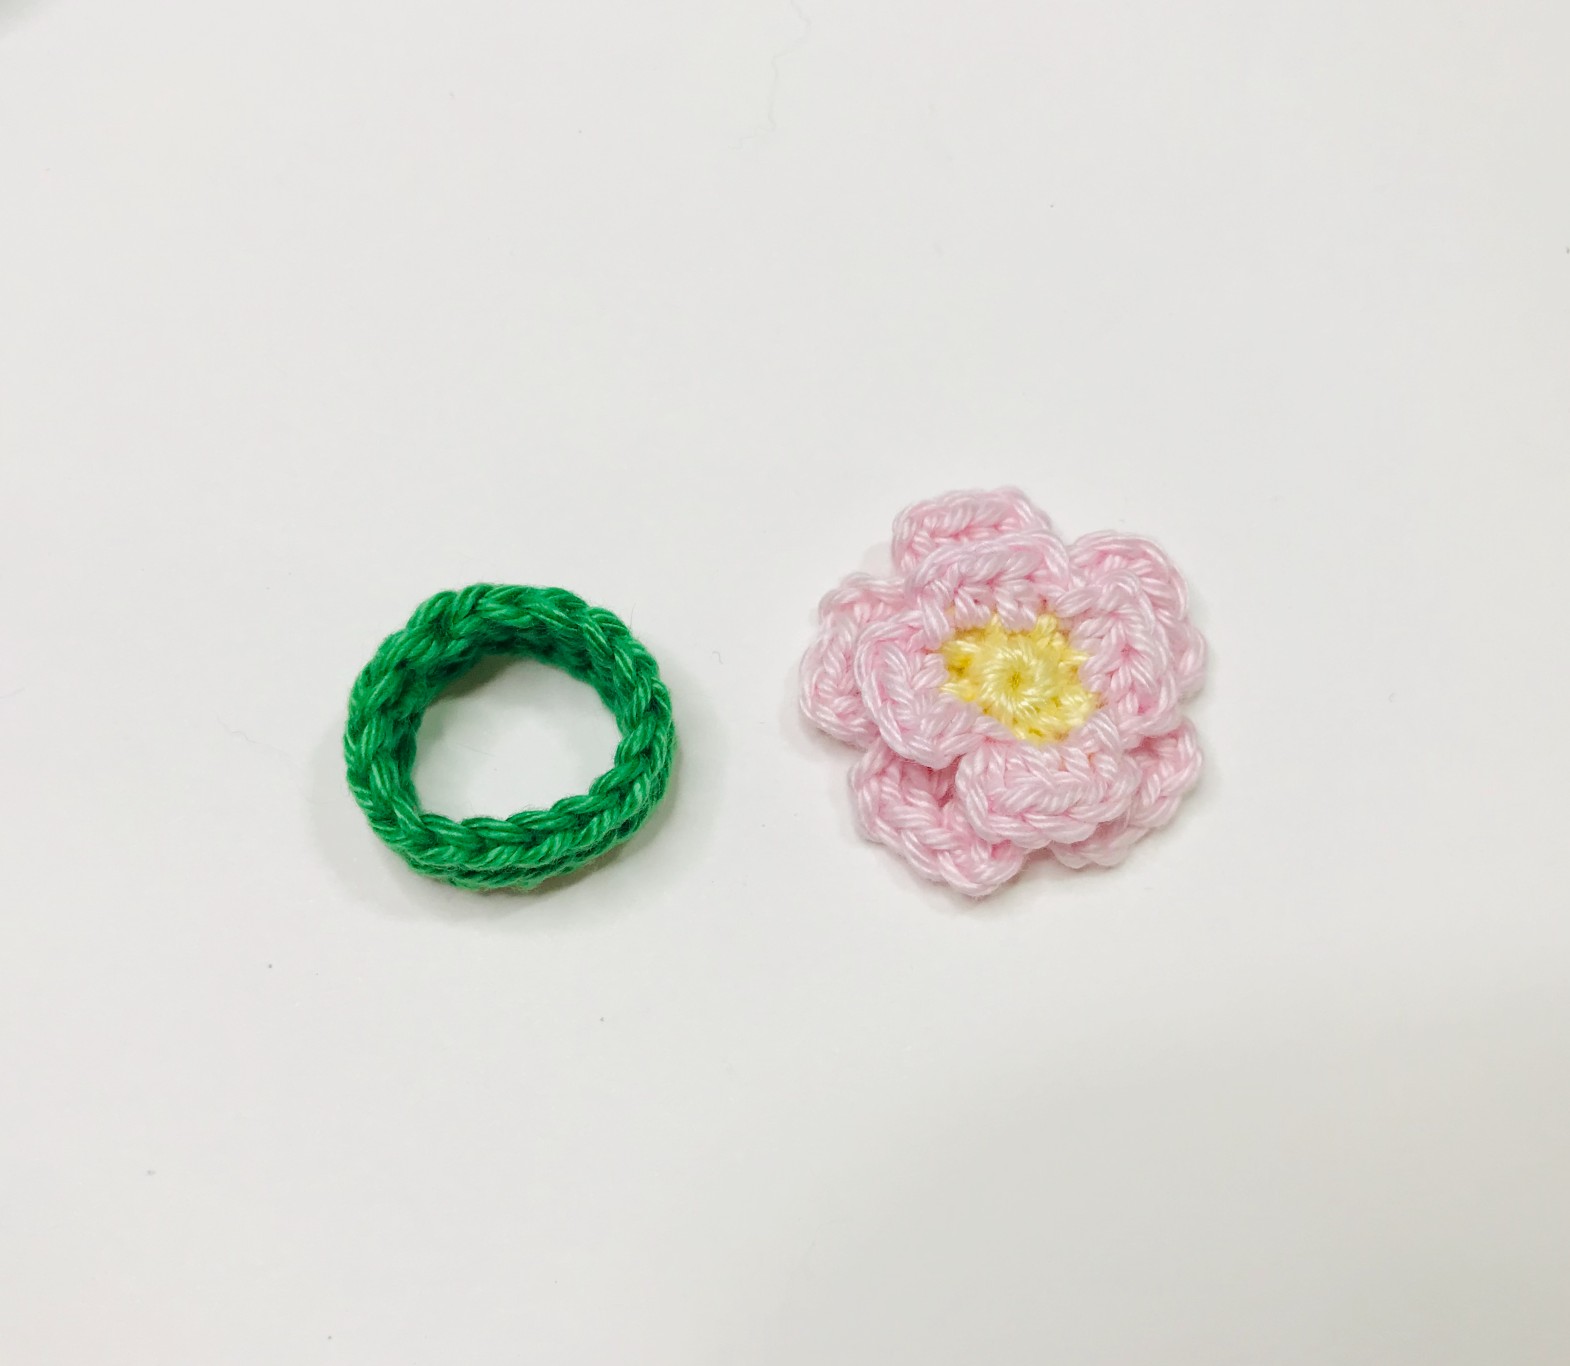 pierscionek_reka2 | crochet flower ring one size 3,5 - 5,5 c… | Joanna |  Flickr